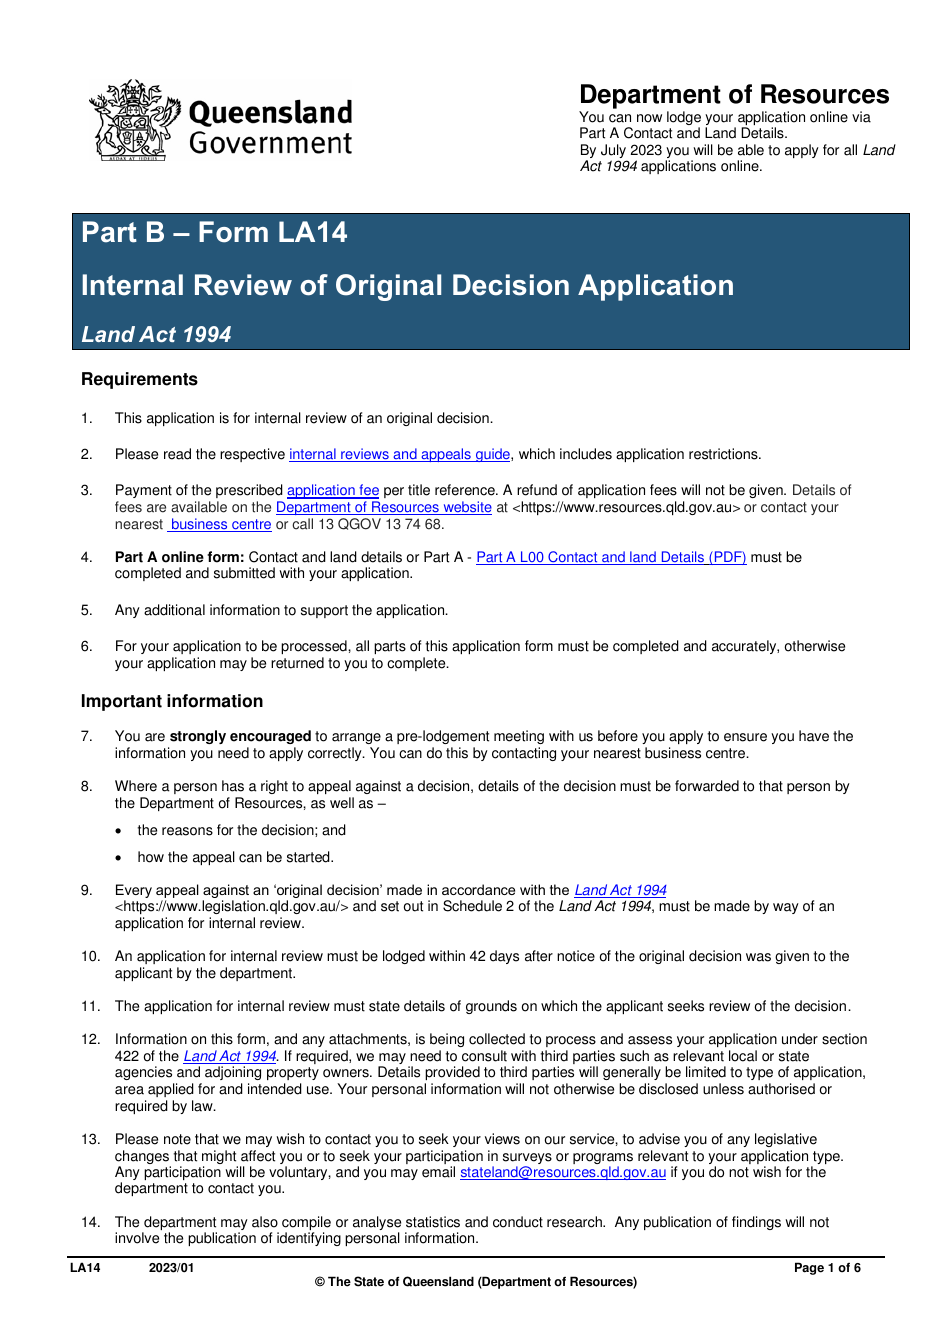 Form LA14 Part B Internal Review of Original Decision Application - Queensland, Australia, Page 1